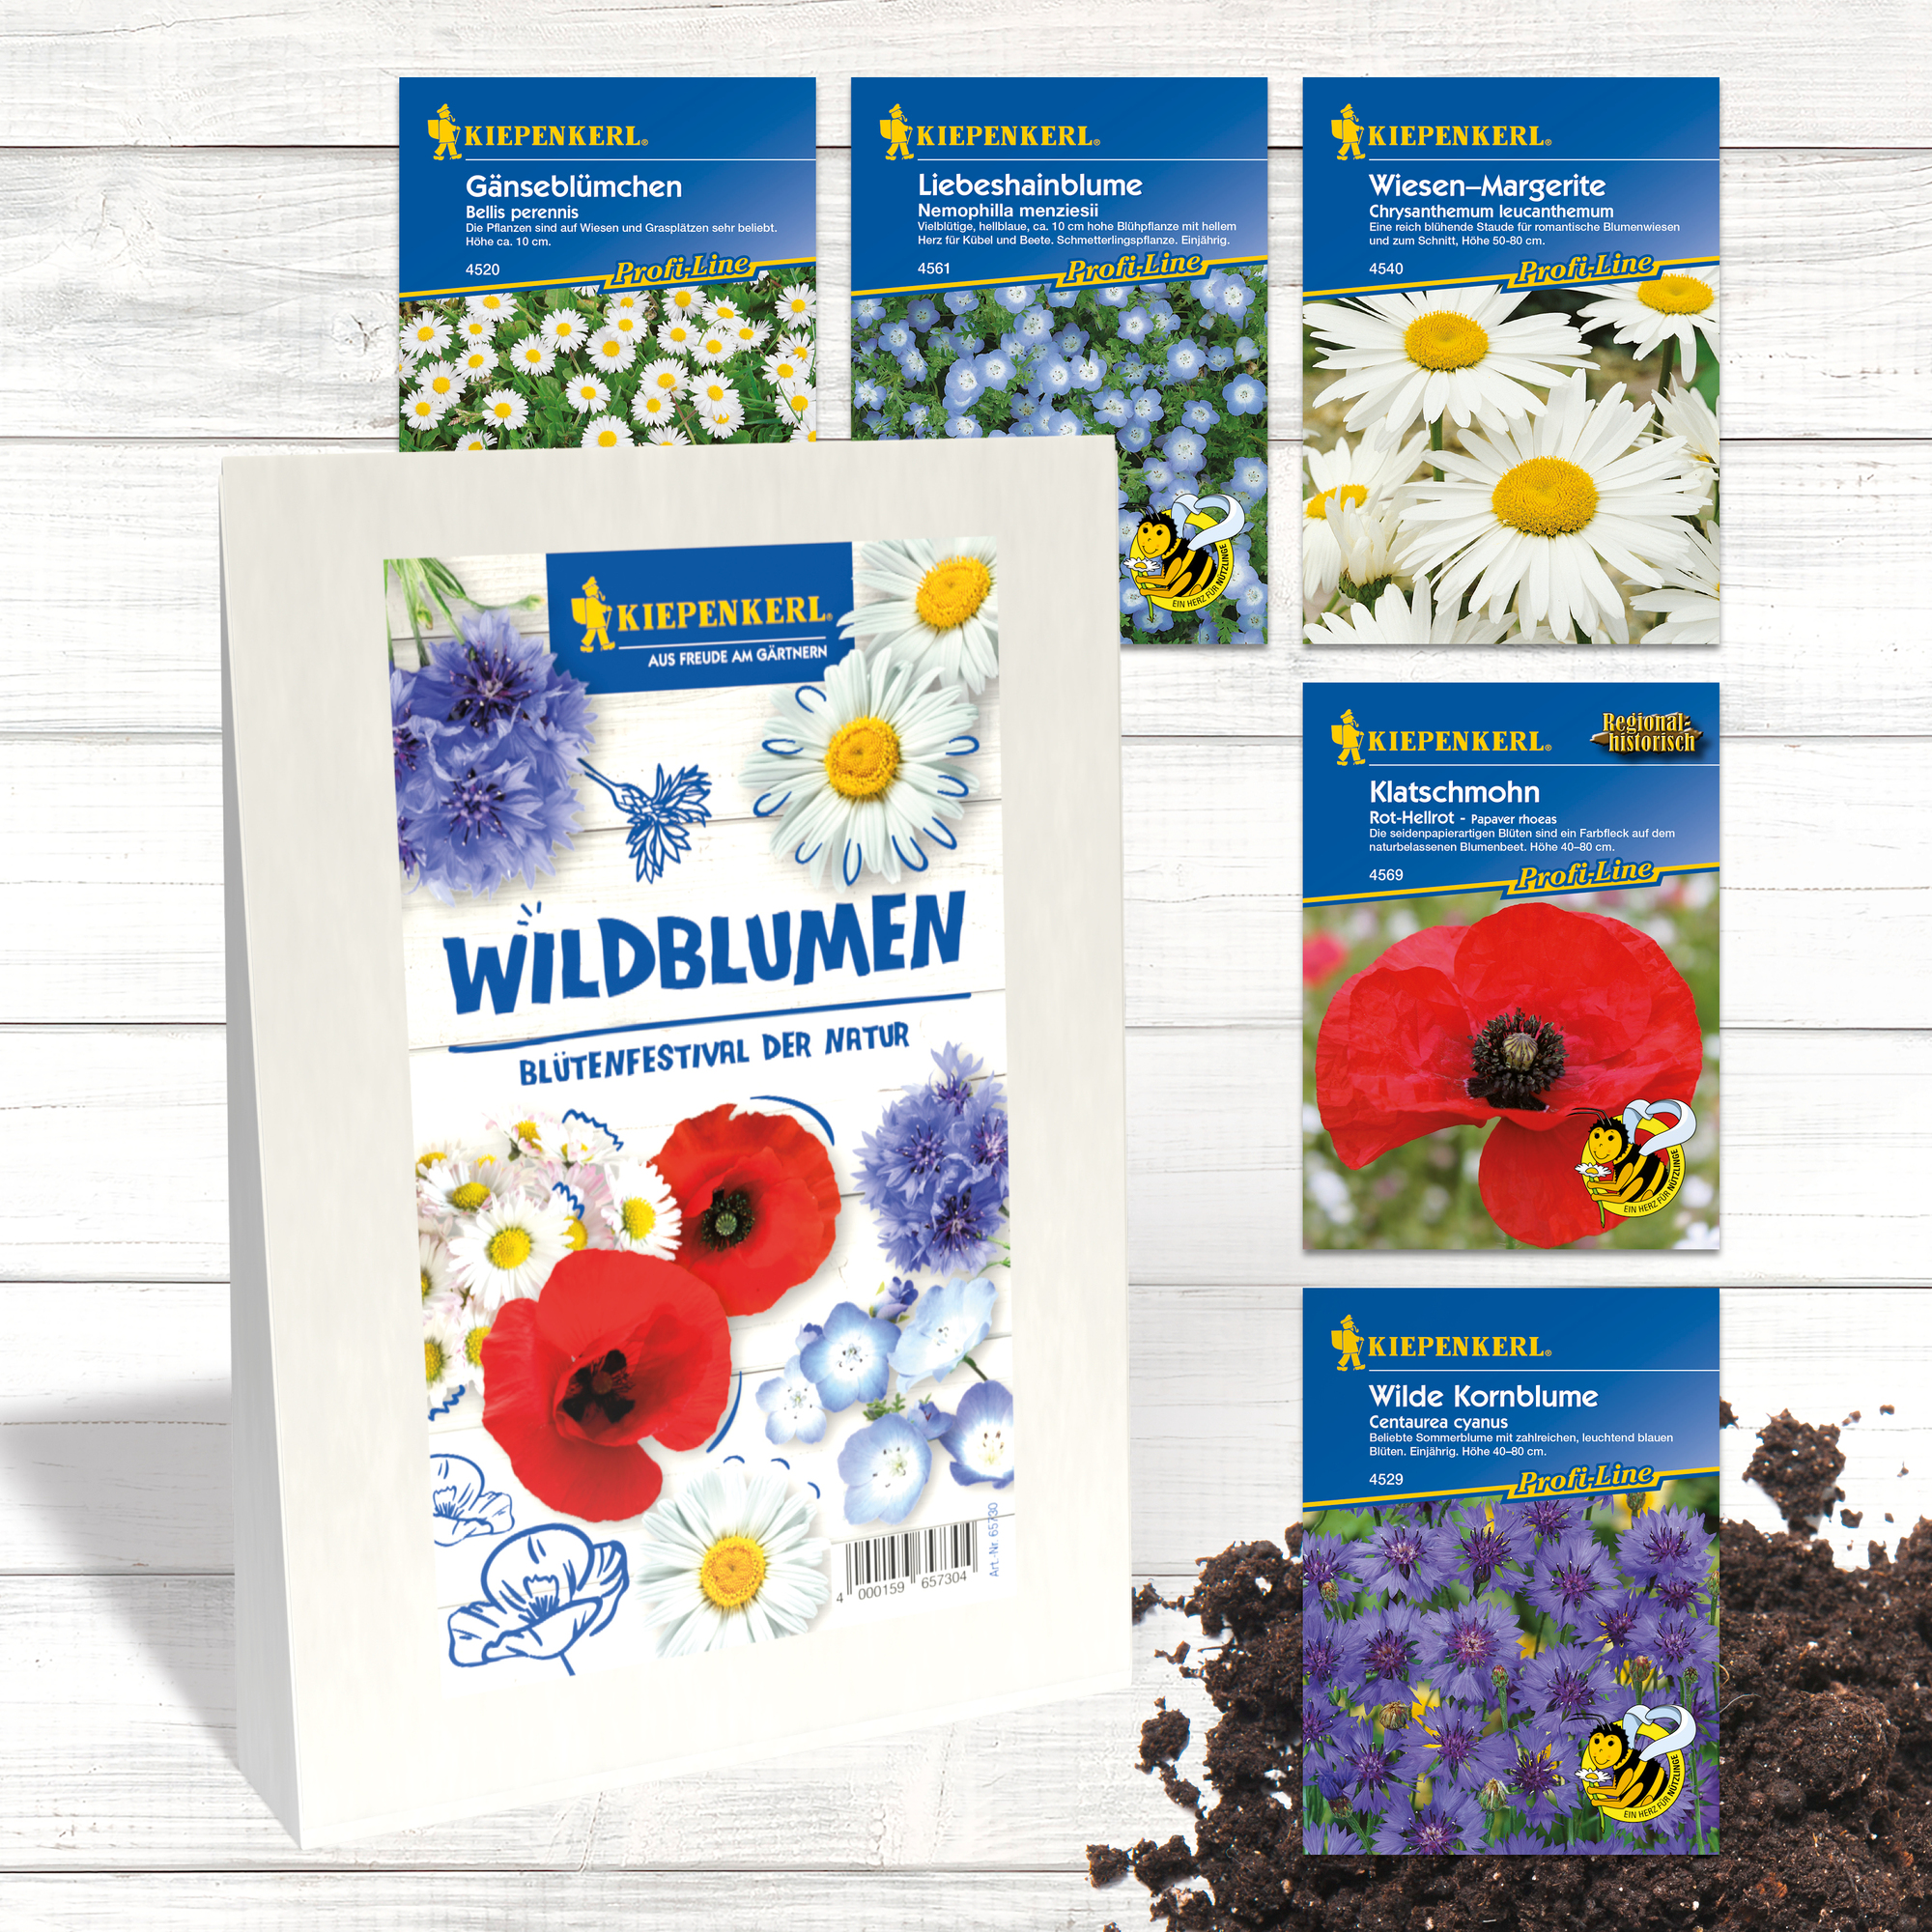 Wildblumen - 'Blütenfestival der Natur'